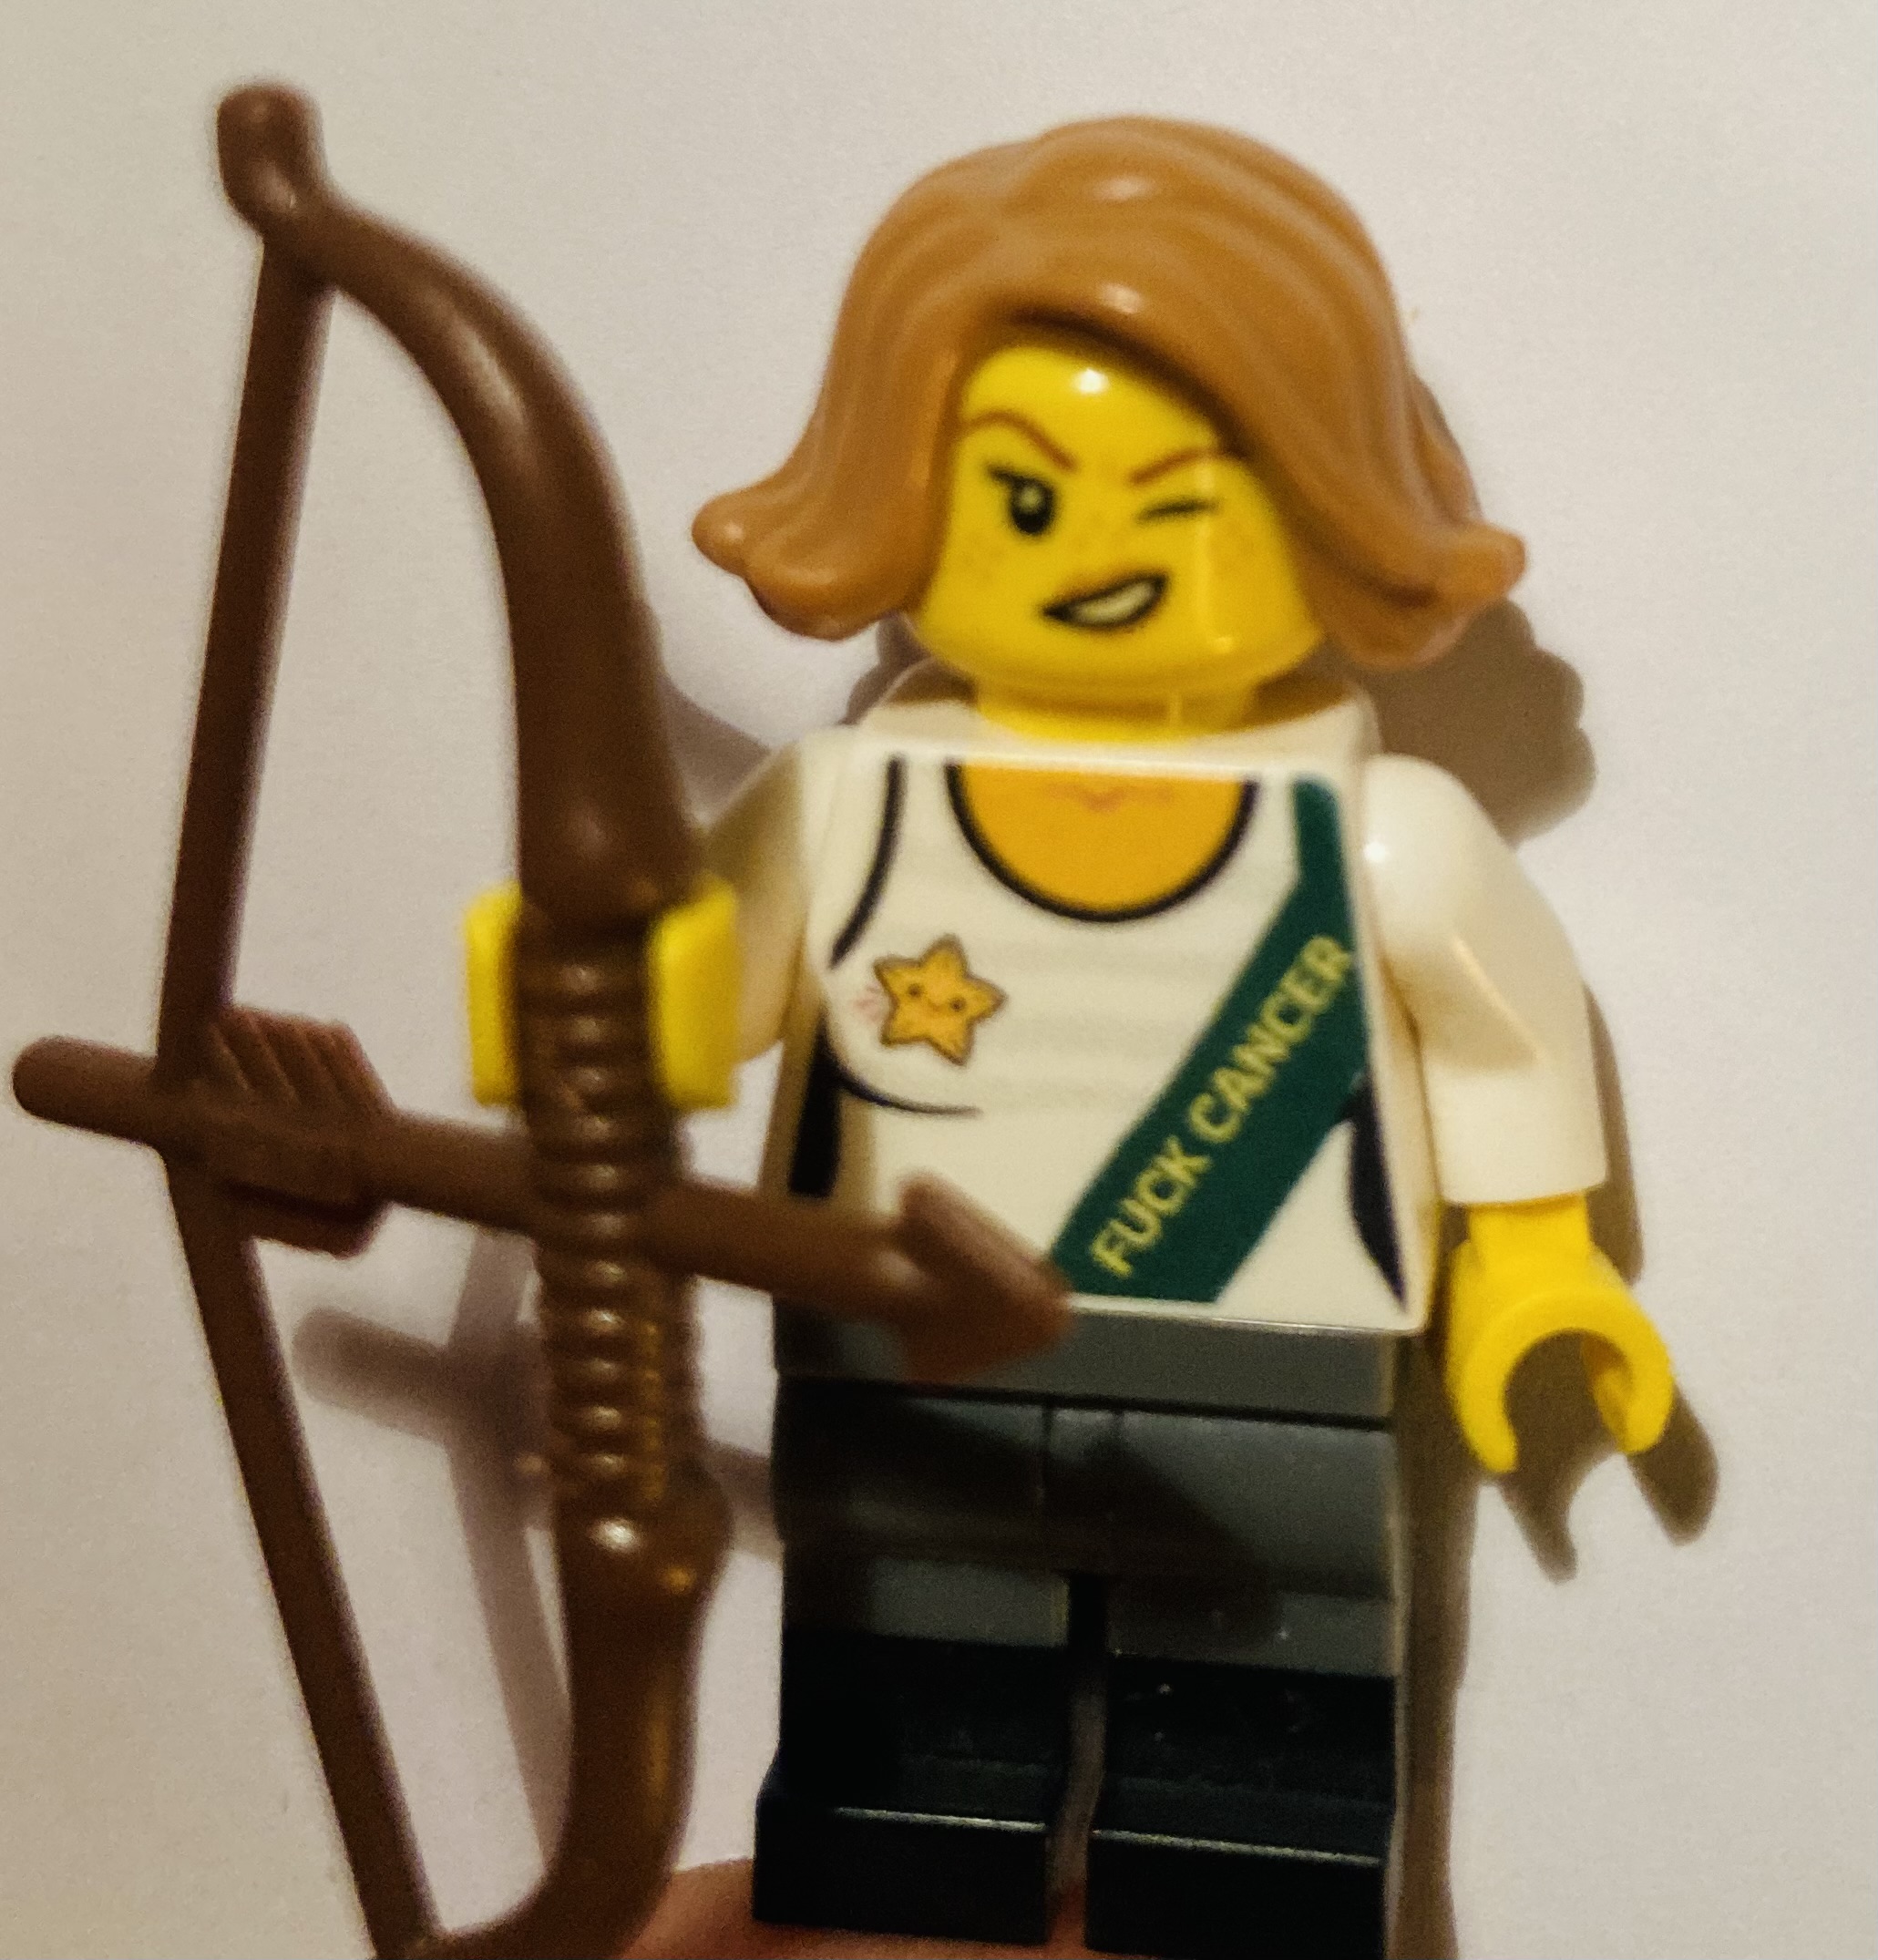 Eine zwinkernde Lego-Figur mit blondem Haar hält Pfeil und Bogen in der Hand. Sie trägt ein Top mit der Aufschrift "Fuck Cancer"